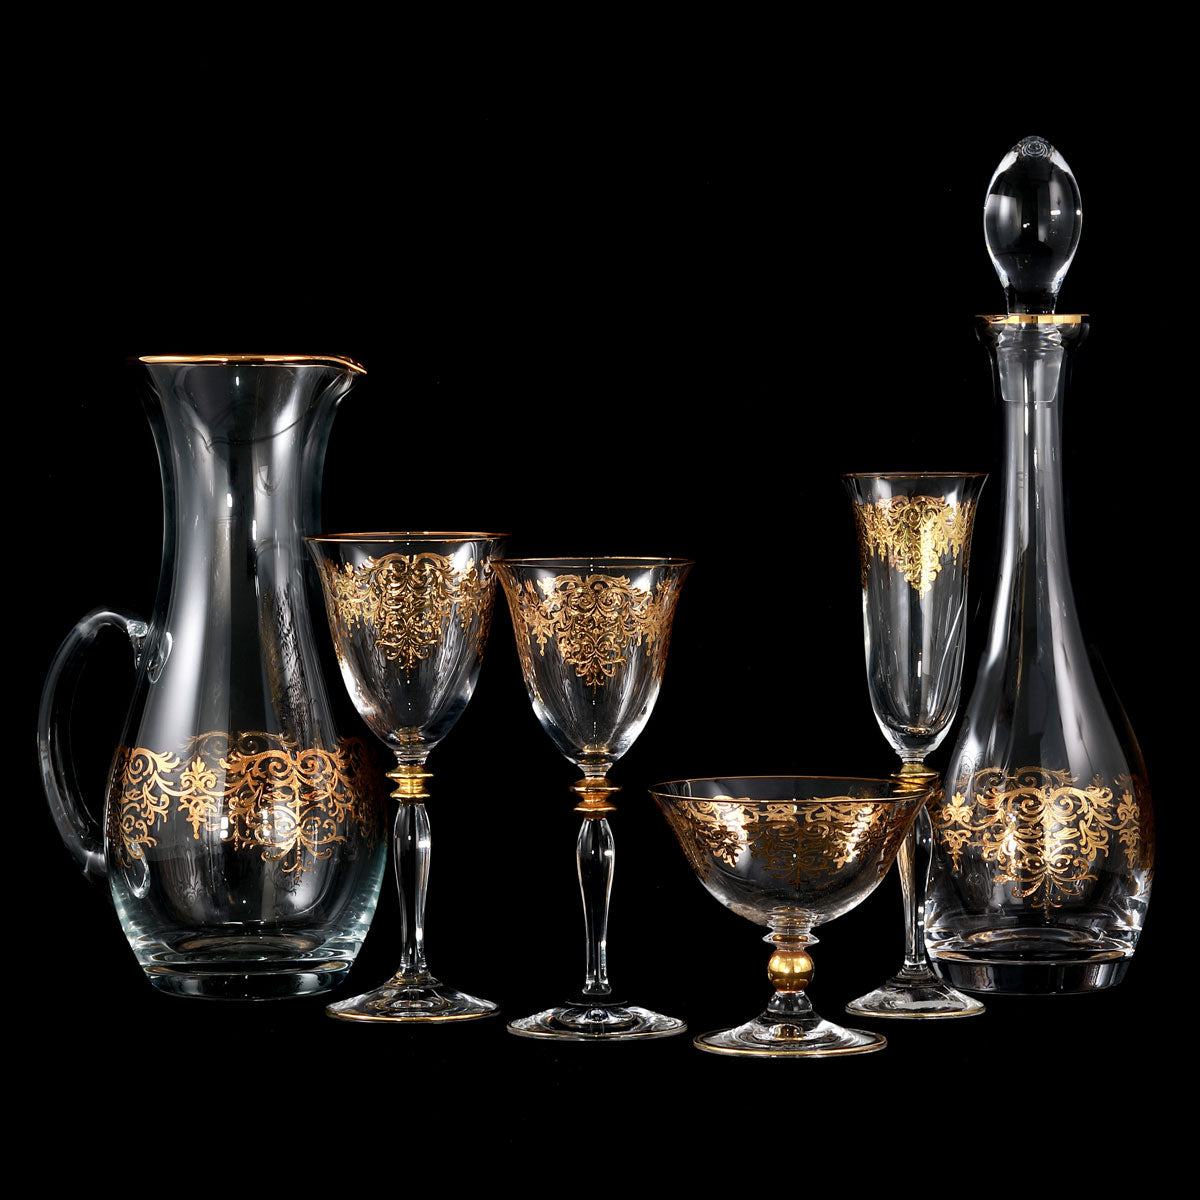 Servizio calici in cristallo con decoro in oro barocco e servizio porcellana coordinato - Prestige